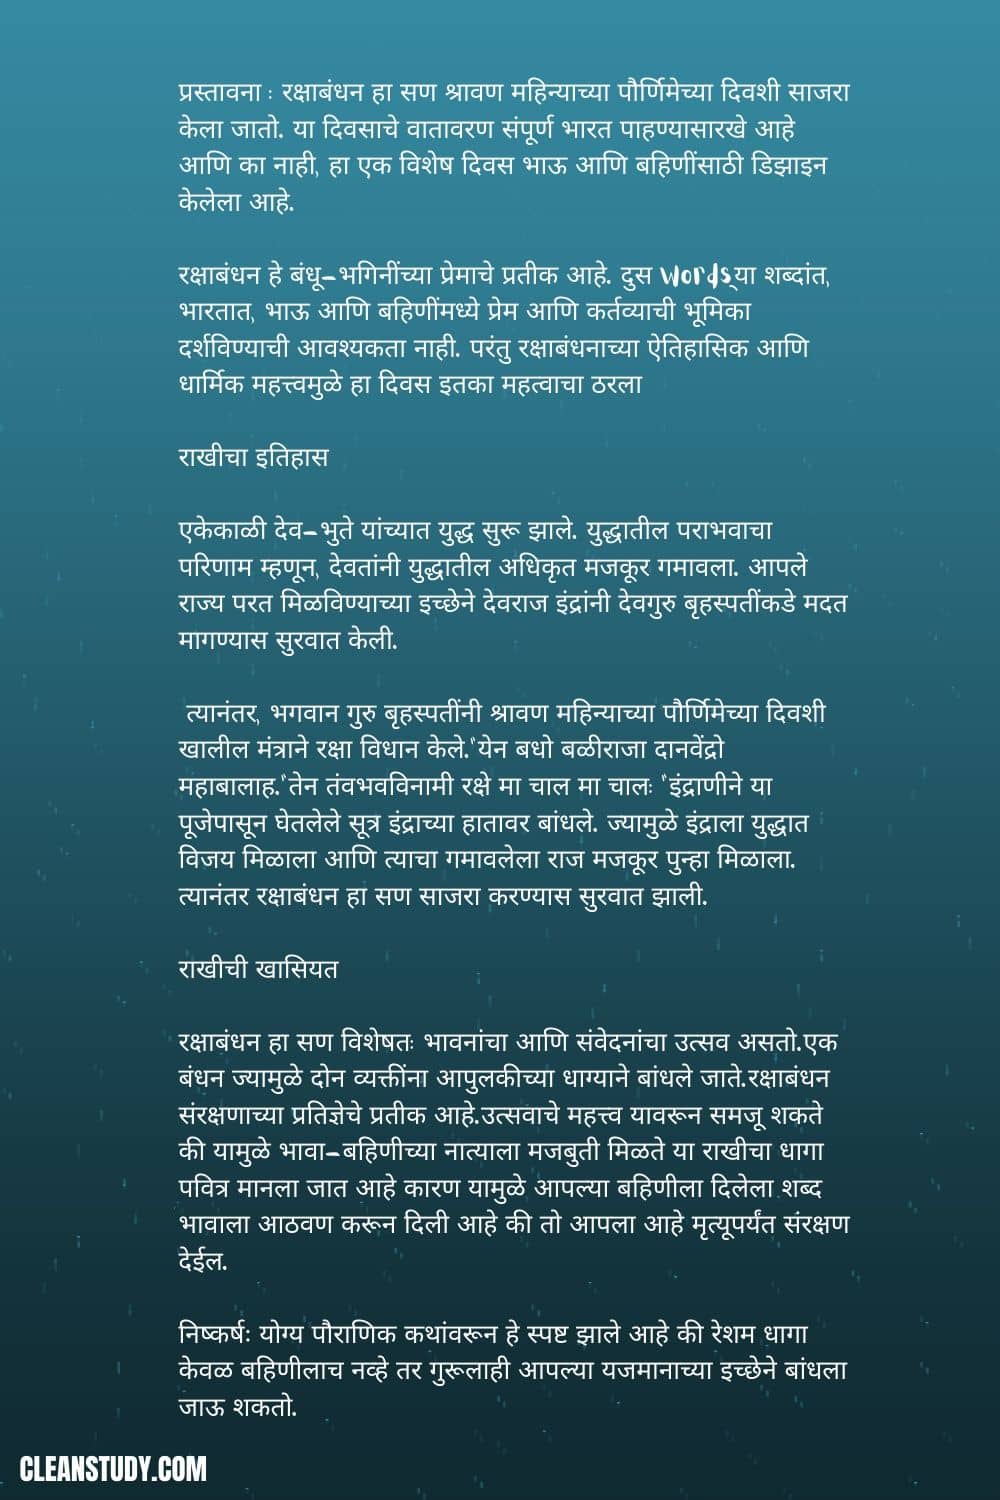 raksha bandhan nibandh image in marathi